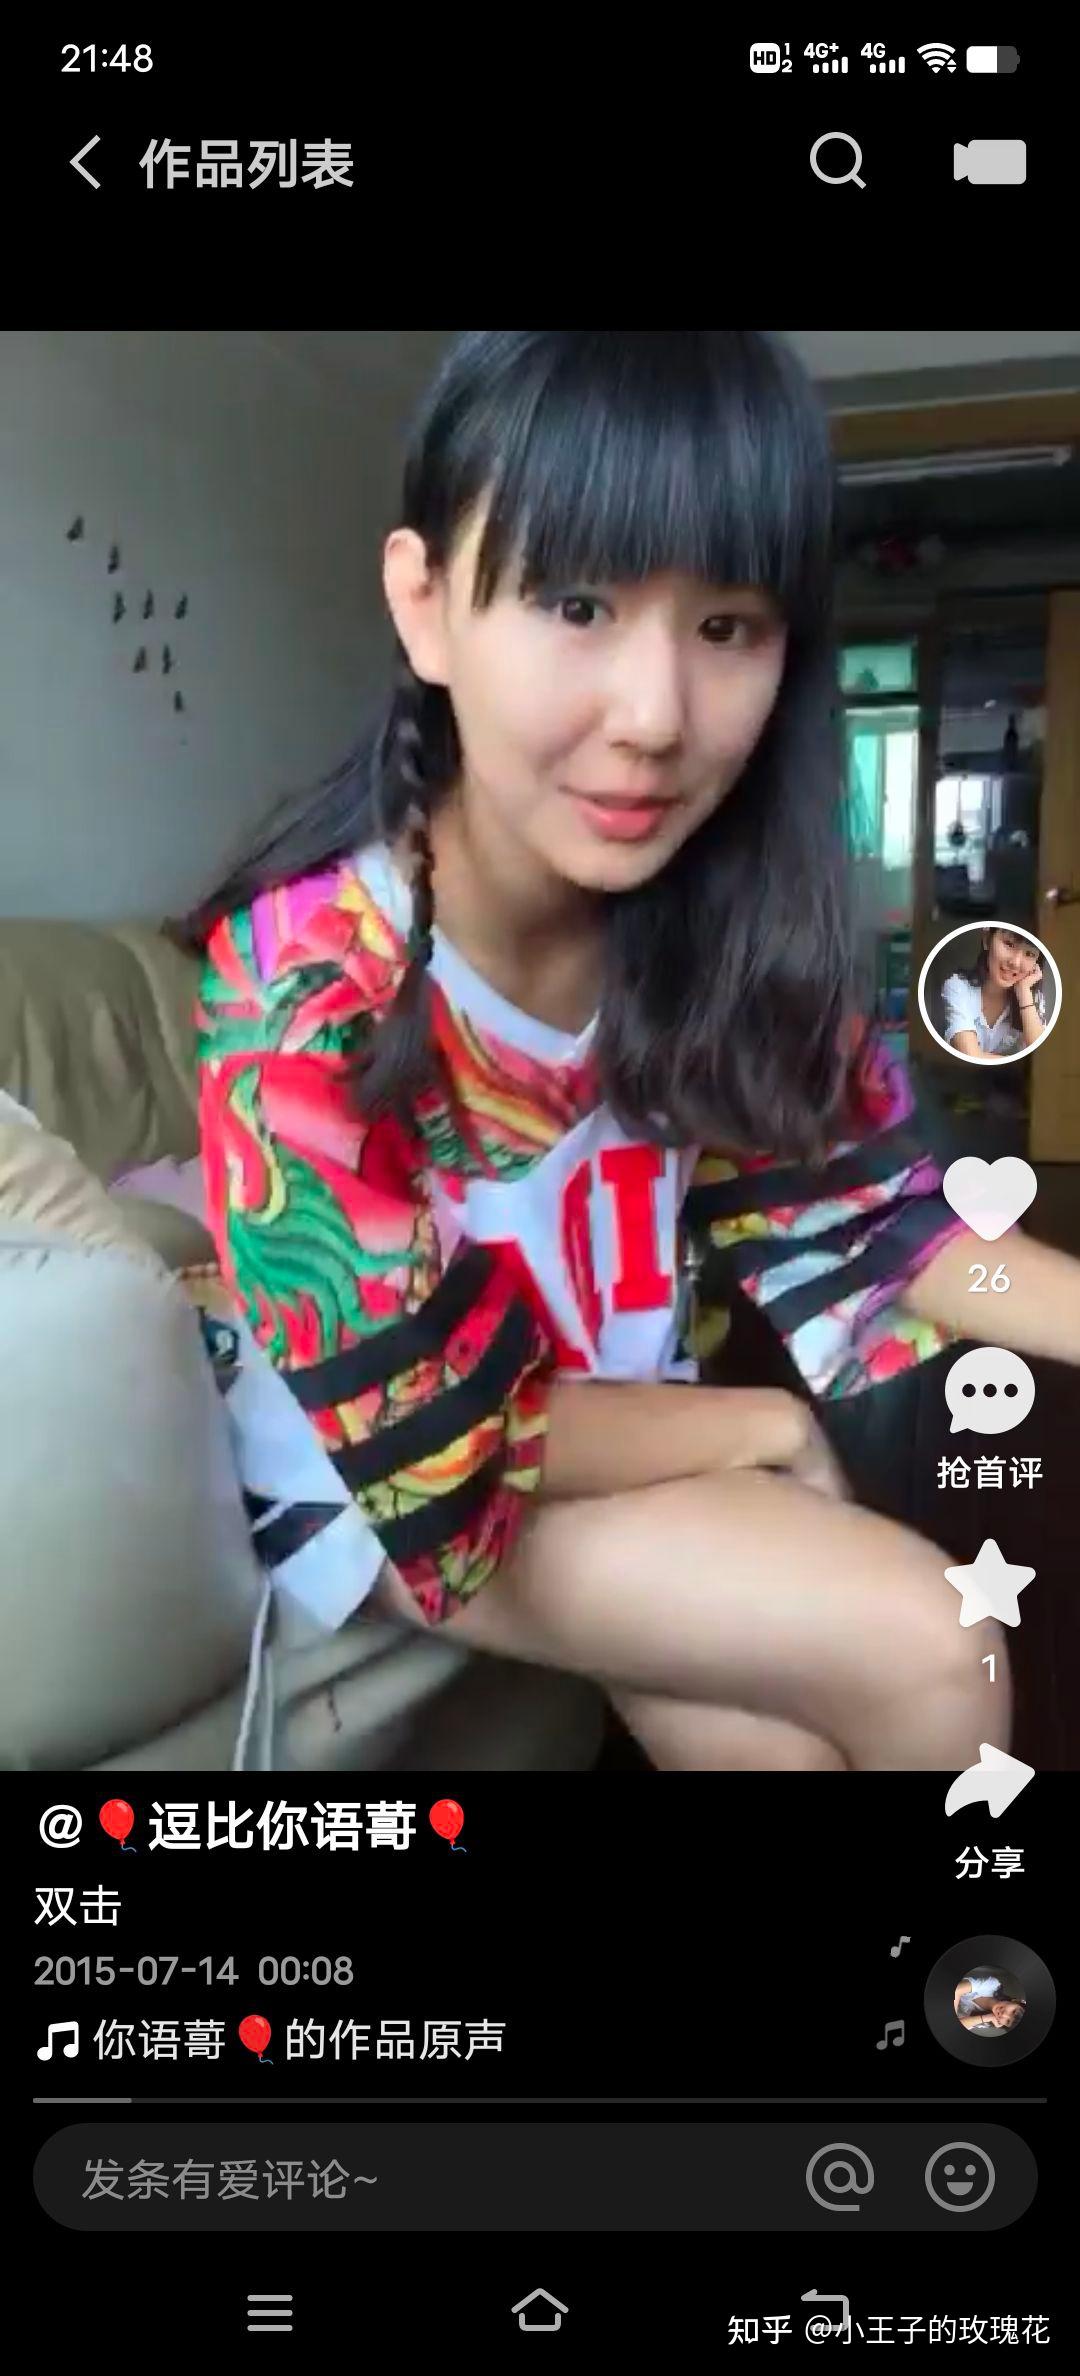 快手网红刘思琪婊妹儿15分55秒完整被打视频 | 爱尖刀